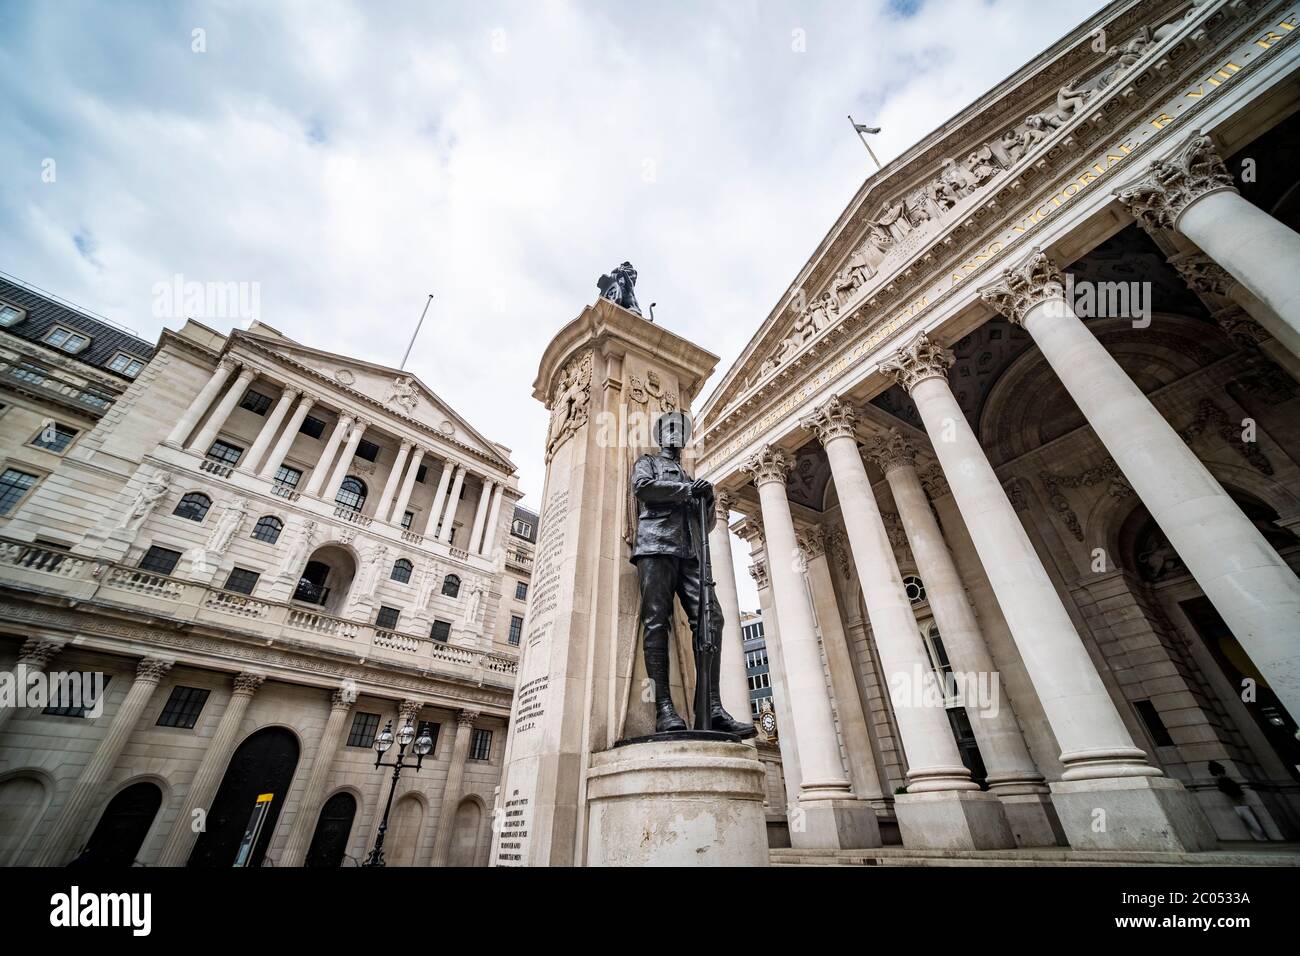 LONDRES- JUNIO de 2020: Banco de Inglaterra y edificio de la Bolsa Real, un edificio histórico y famoso en la ciudad de Londres Foto de stock